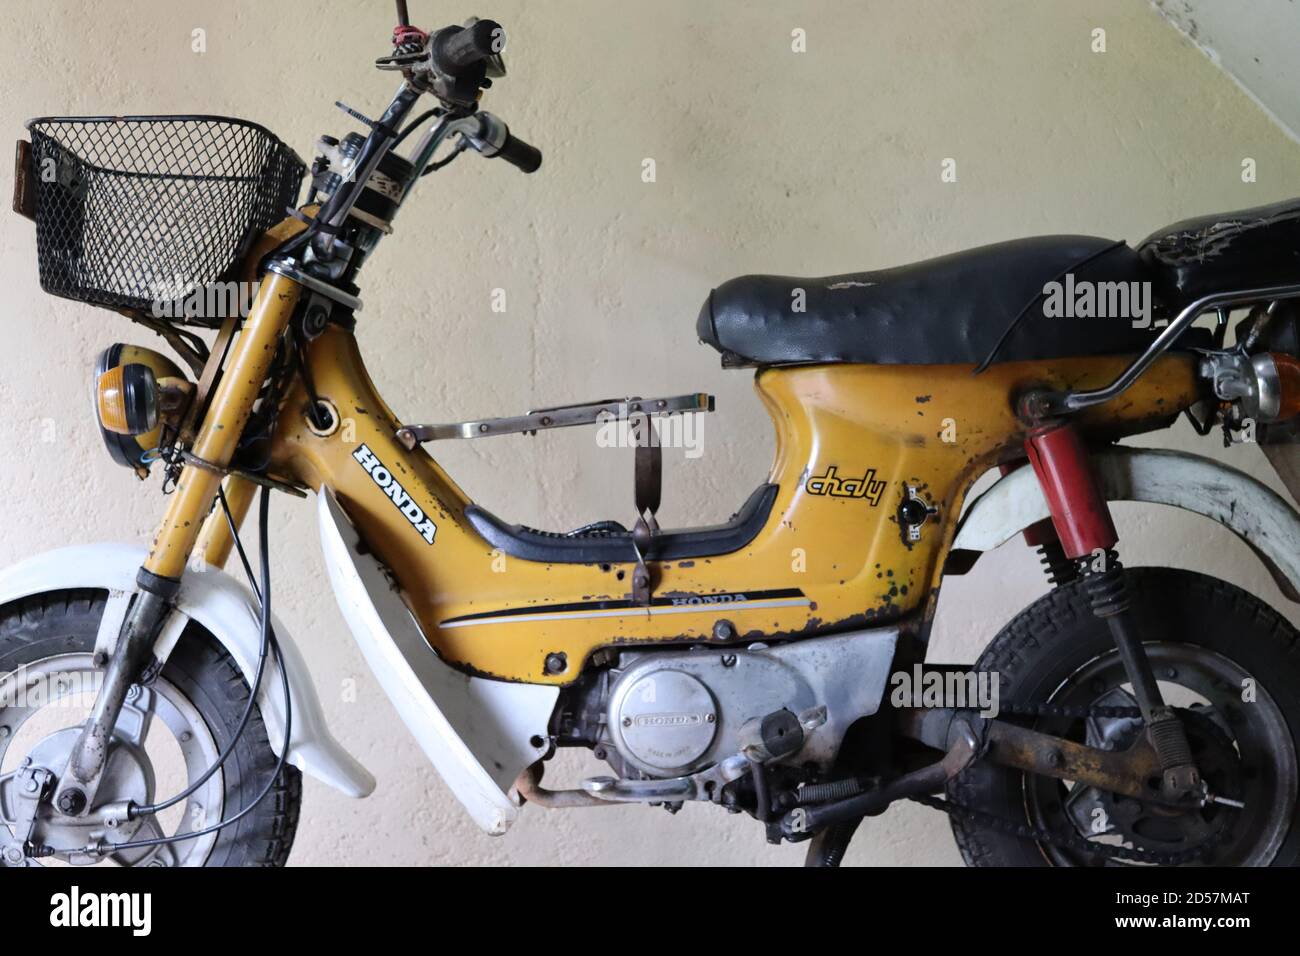 En très bon état de marche et à l'origine du Japon sous la marque Honda et la série de modèles comme Chaly cette moto a fait en 1984. Banque D'Images